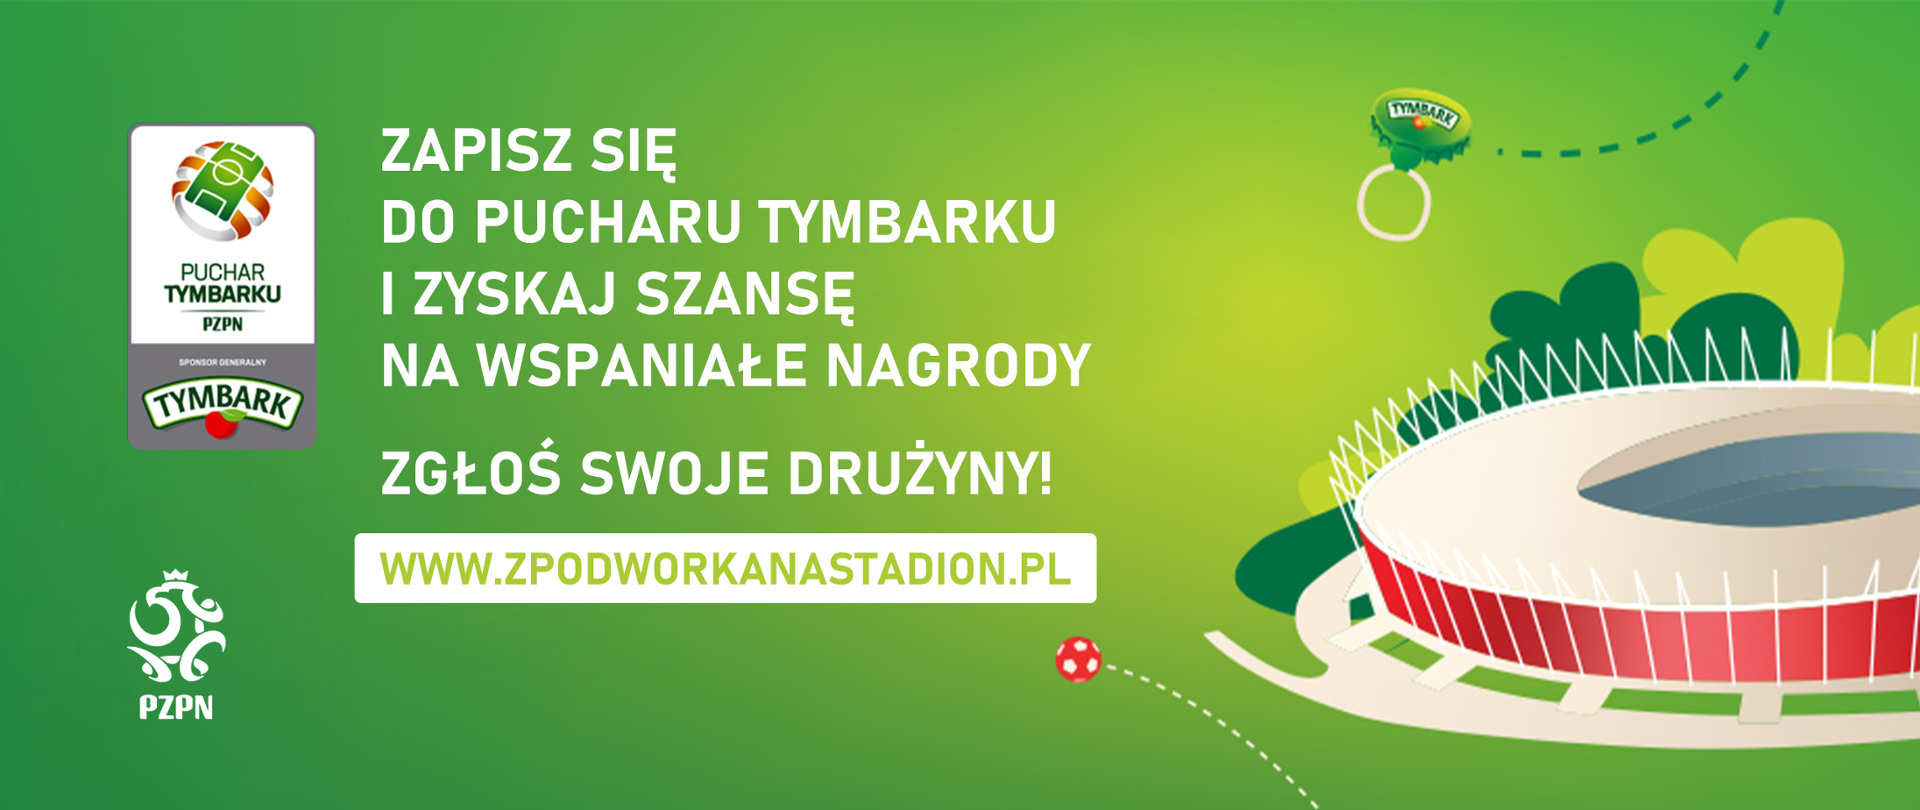 Grafika przedstawia na zielonym tle kolorowy rysunek Stadionu Narodowego, piłki, nakrętki napoju Tymbark; logotyp PZPN oraz Pucharu Tymbarku, a także napisy dotycząca turnieju.